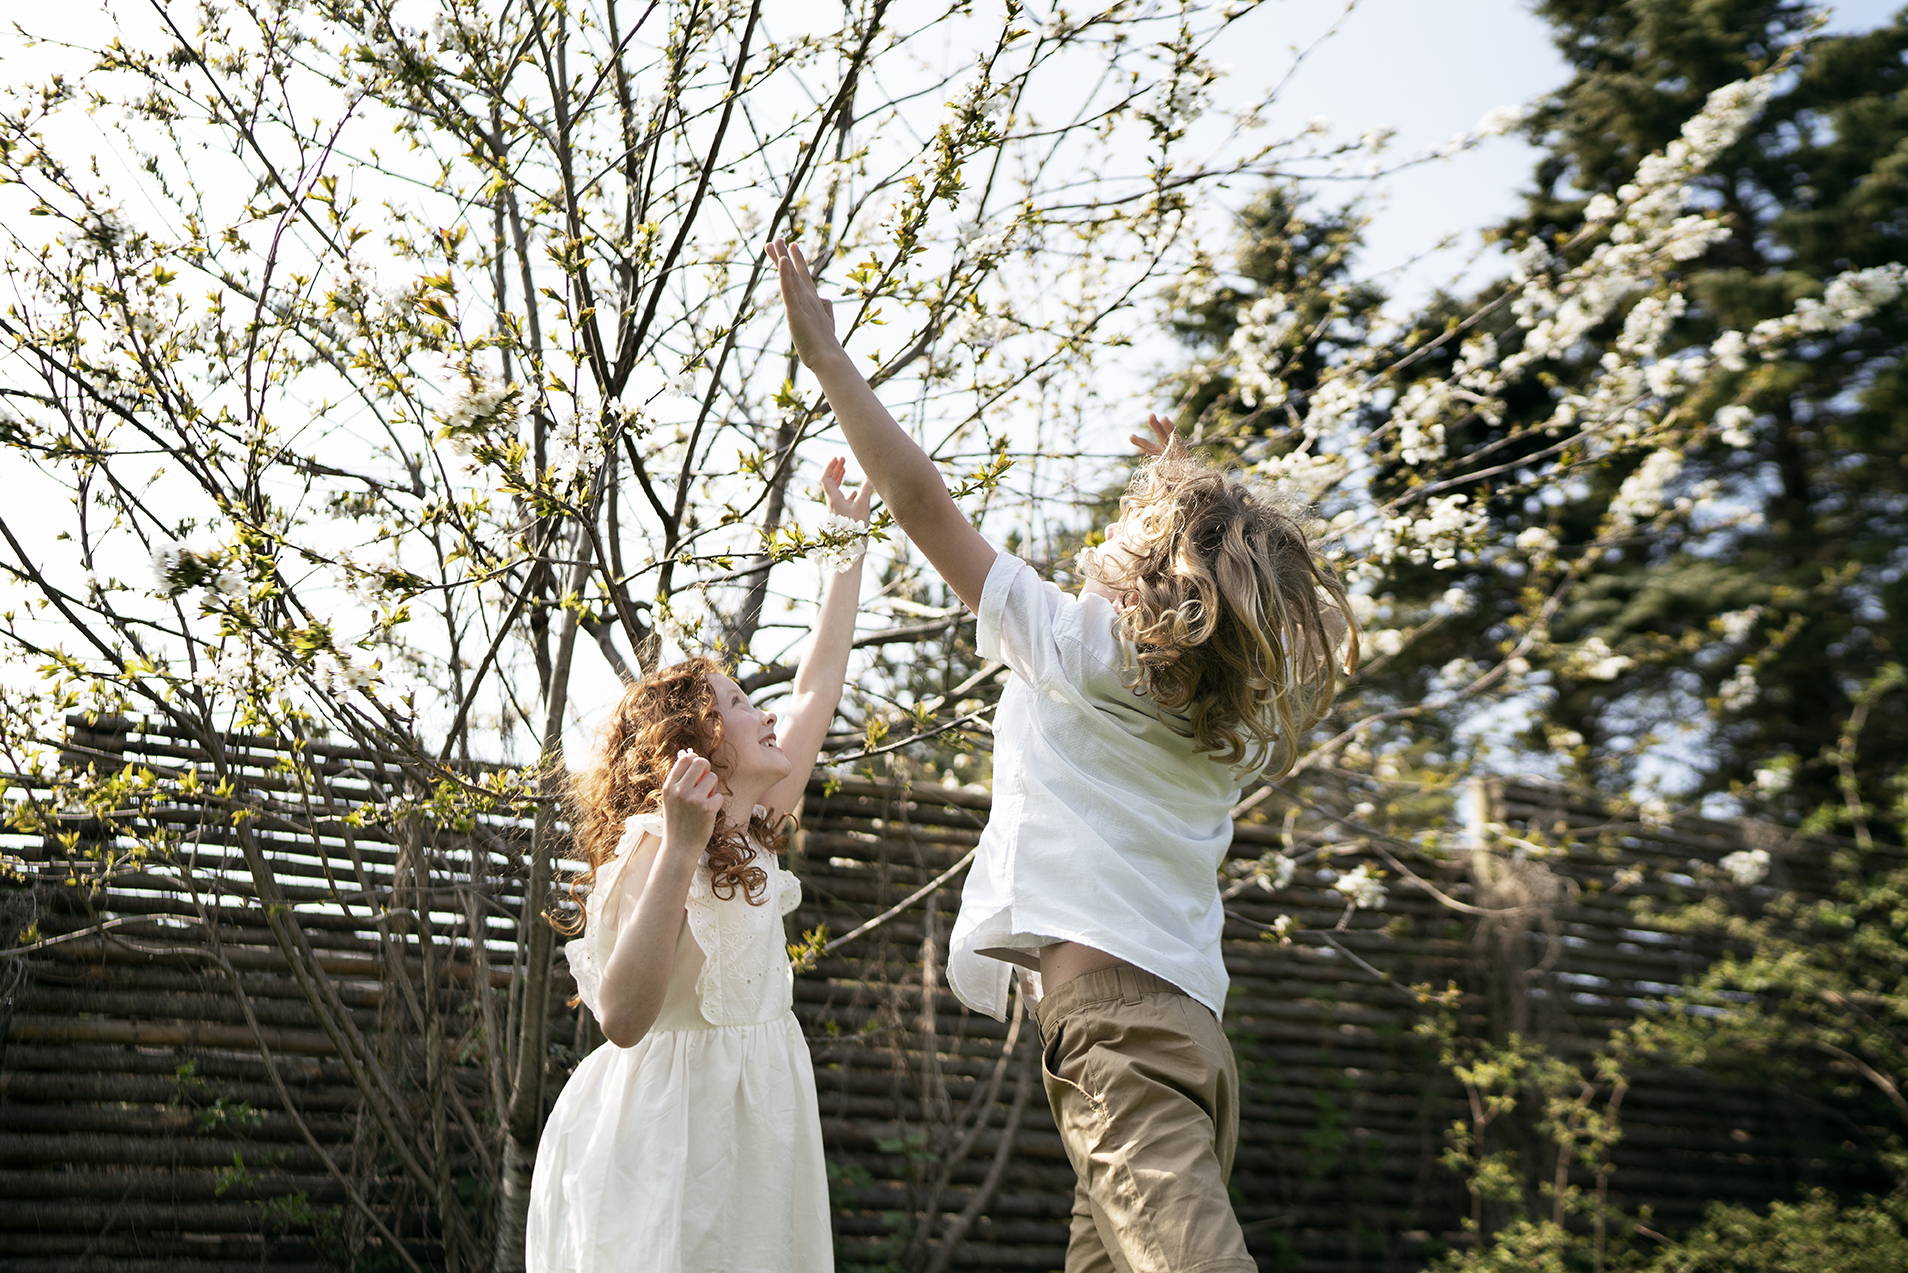 Dievča a chlapec sa spolu hrajú vonku a výskokom sa snažia dotknúť jemných ružových kvetov na stromoch